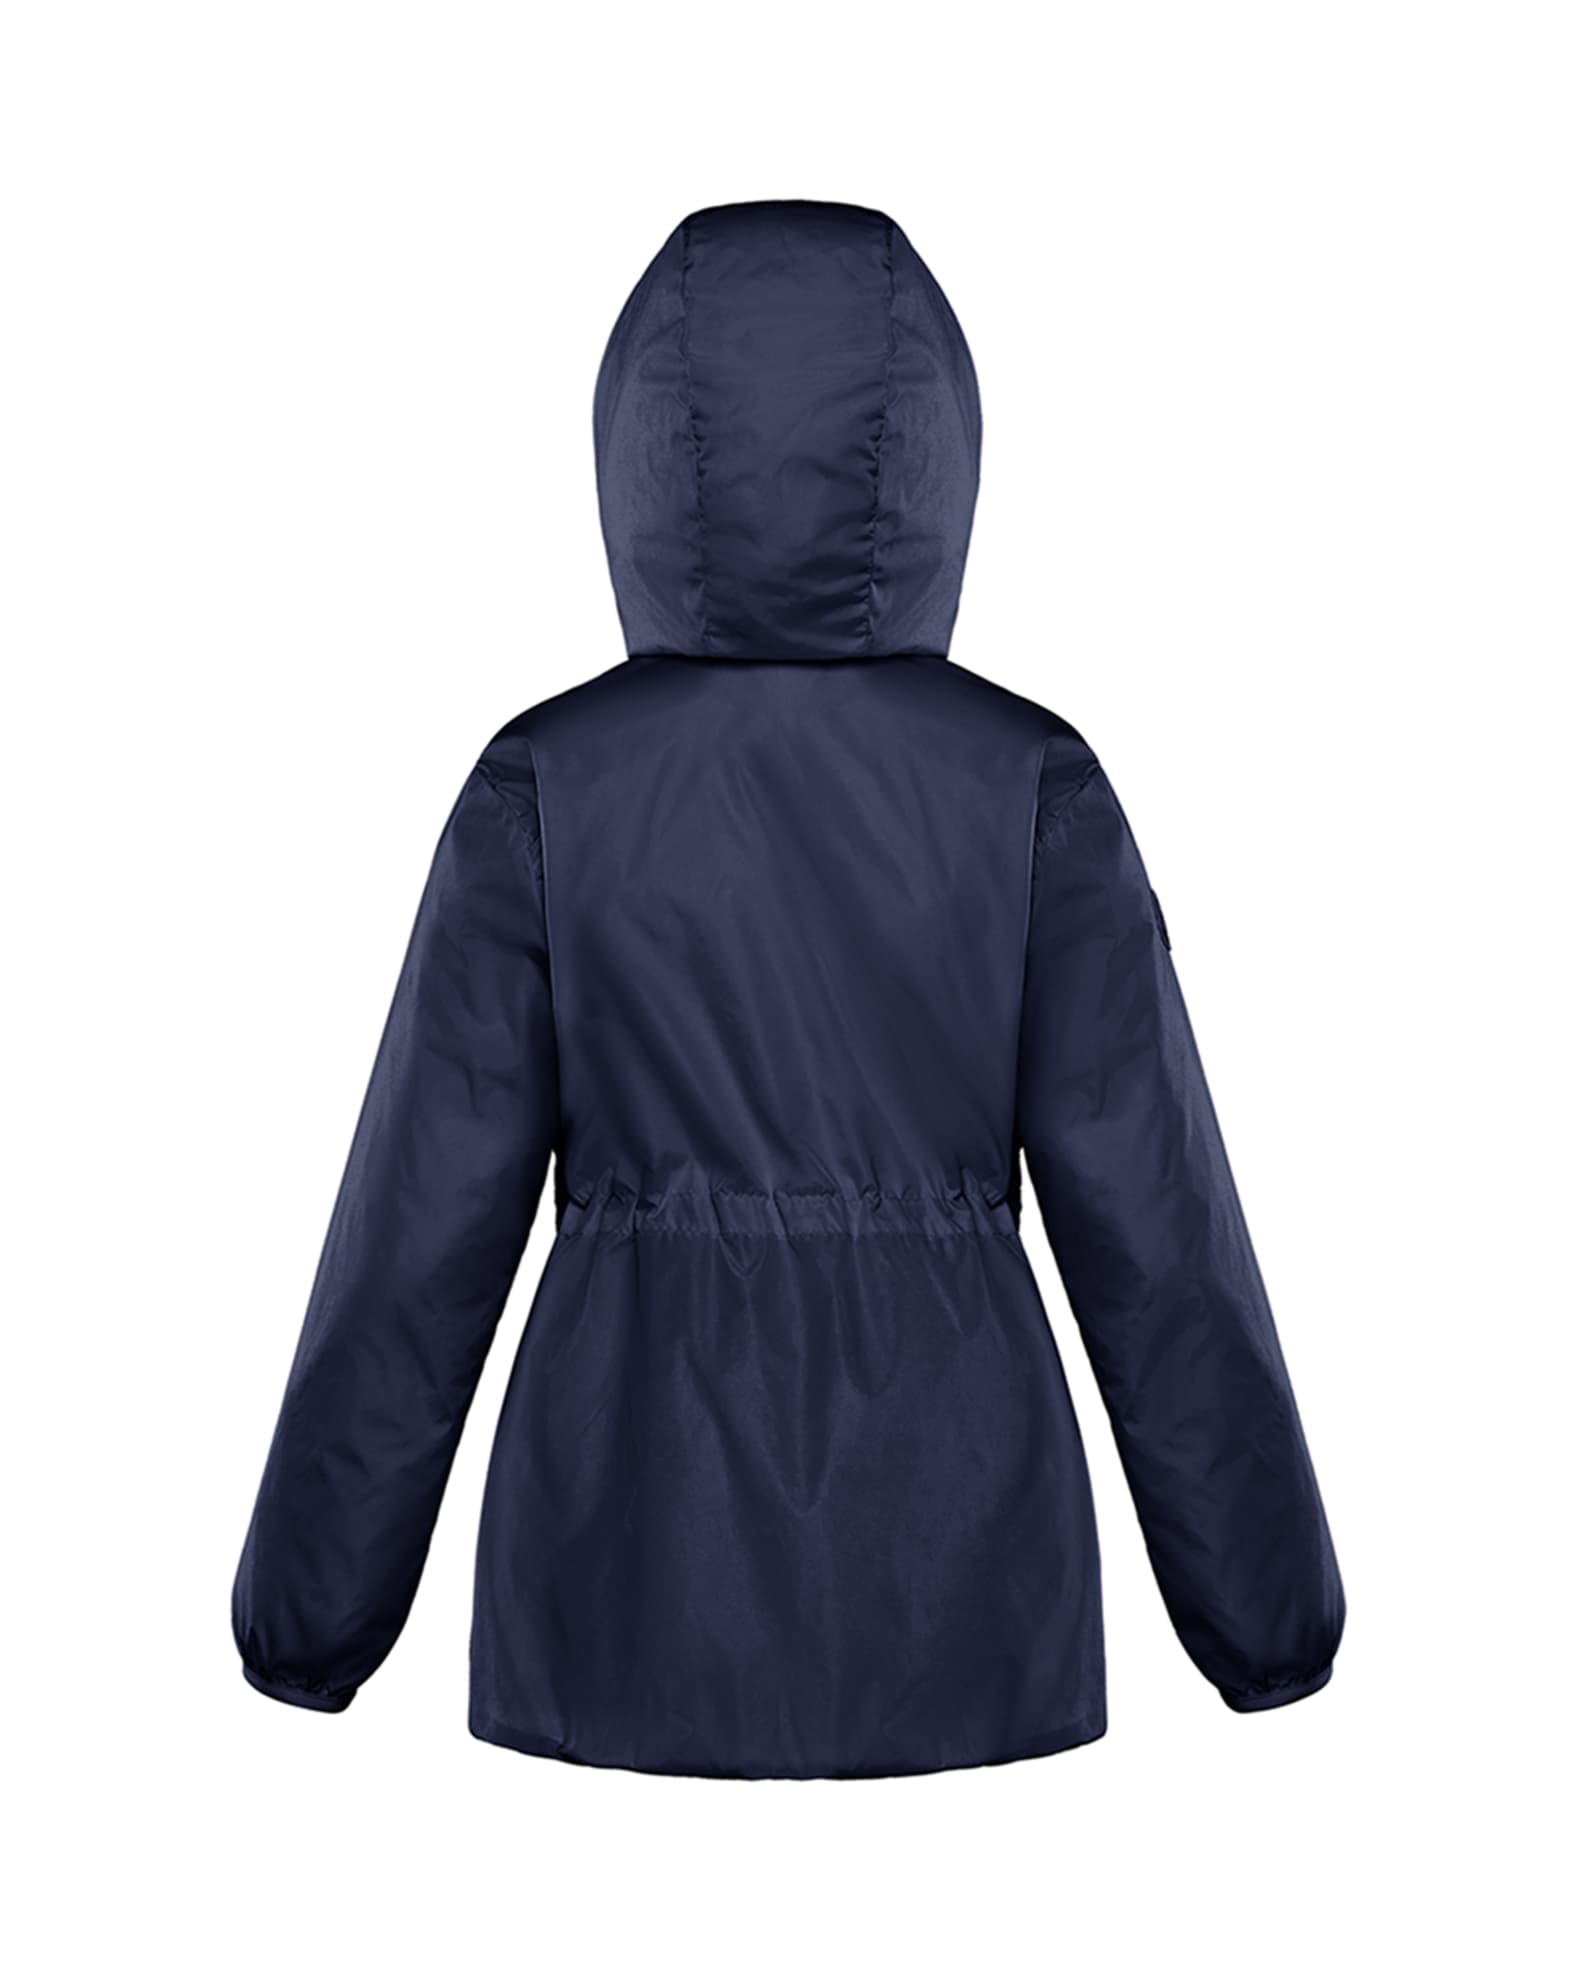 Girl's Technique Hooded Jacket | Neiman Marcus